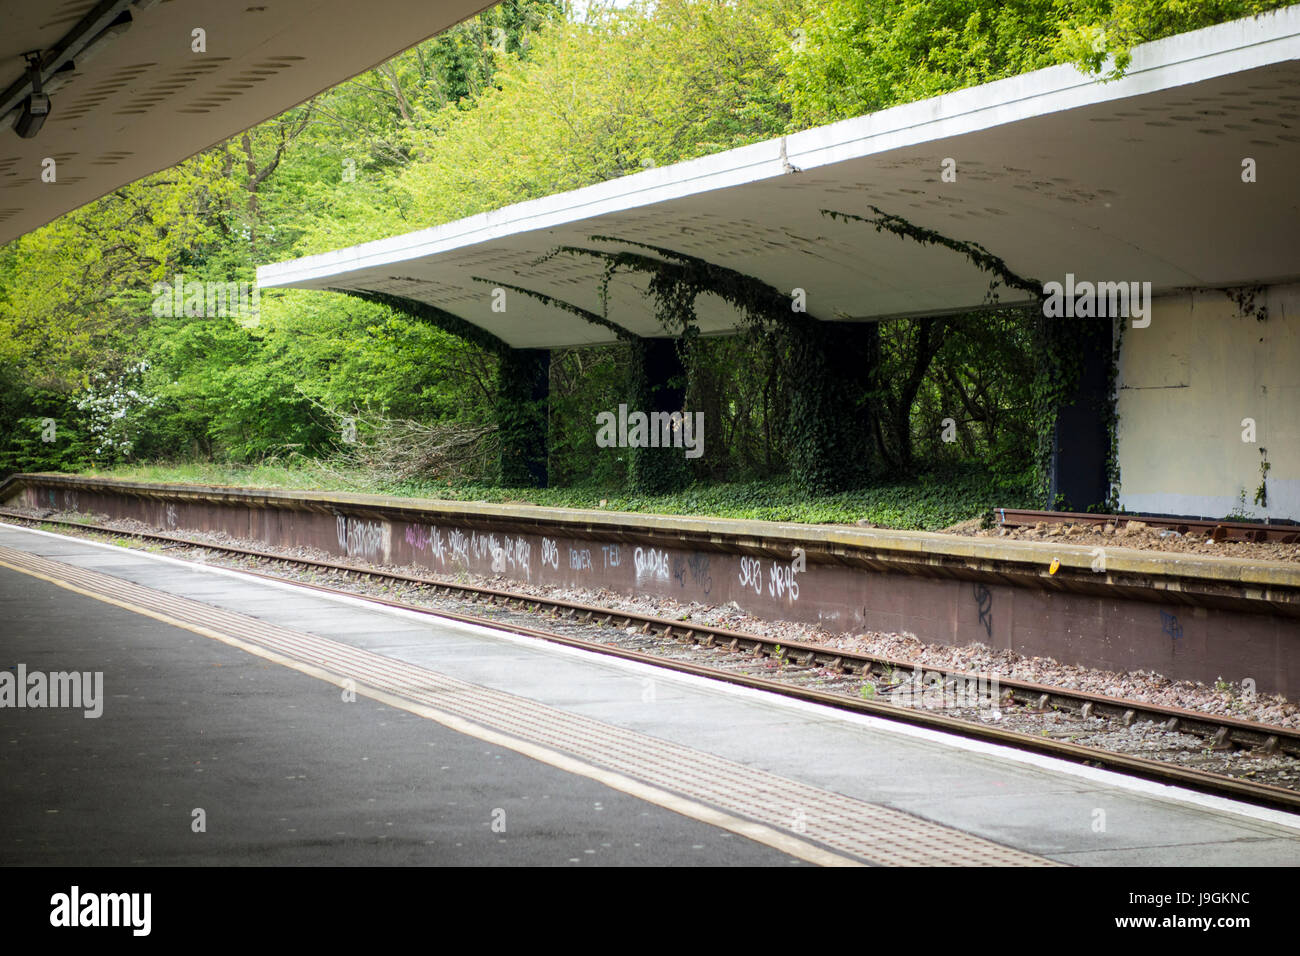 La plataforma de la estación en desuso, Chessington estación sur de tren, habría sido a través de los trenes de Leatherhead, pero la línea fue cancelada debido a la WW2. Foto de stock